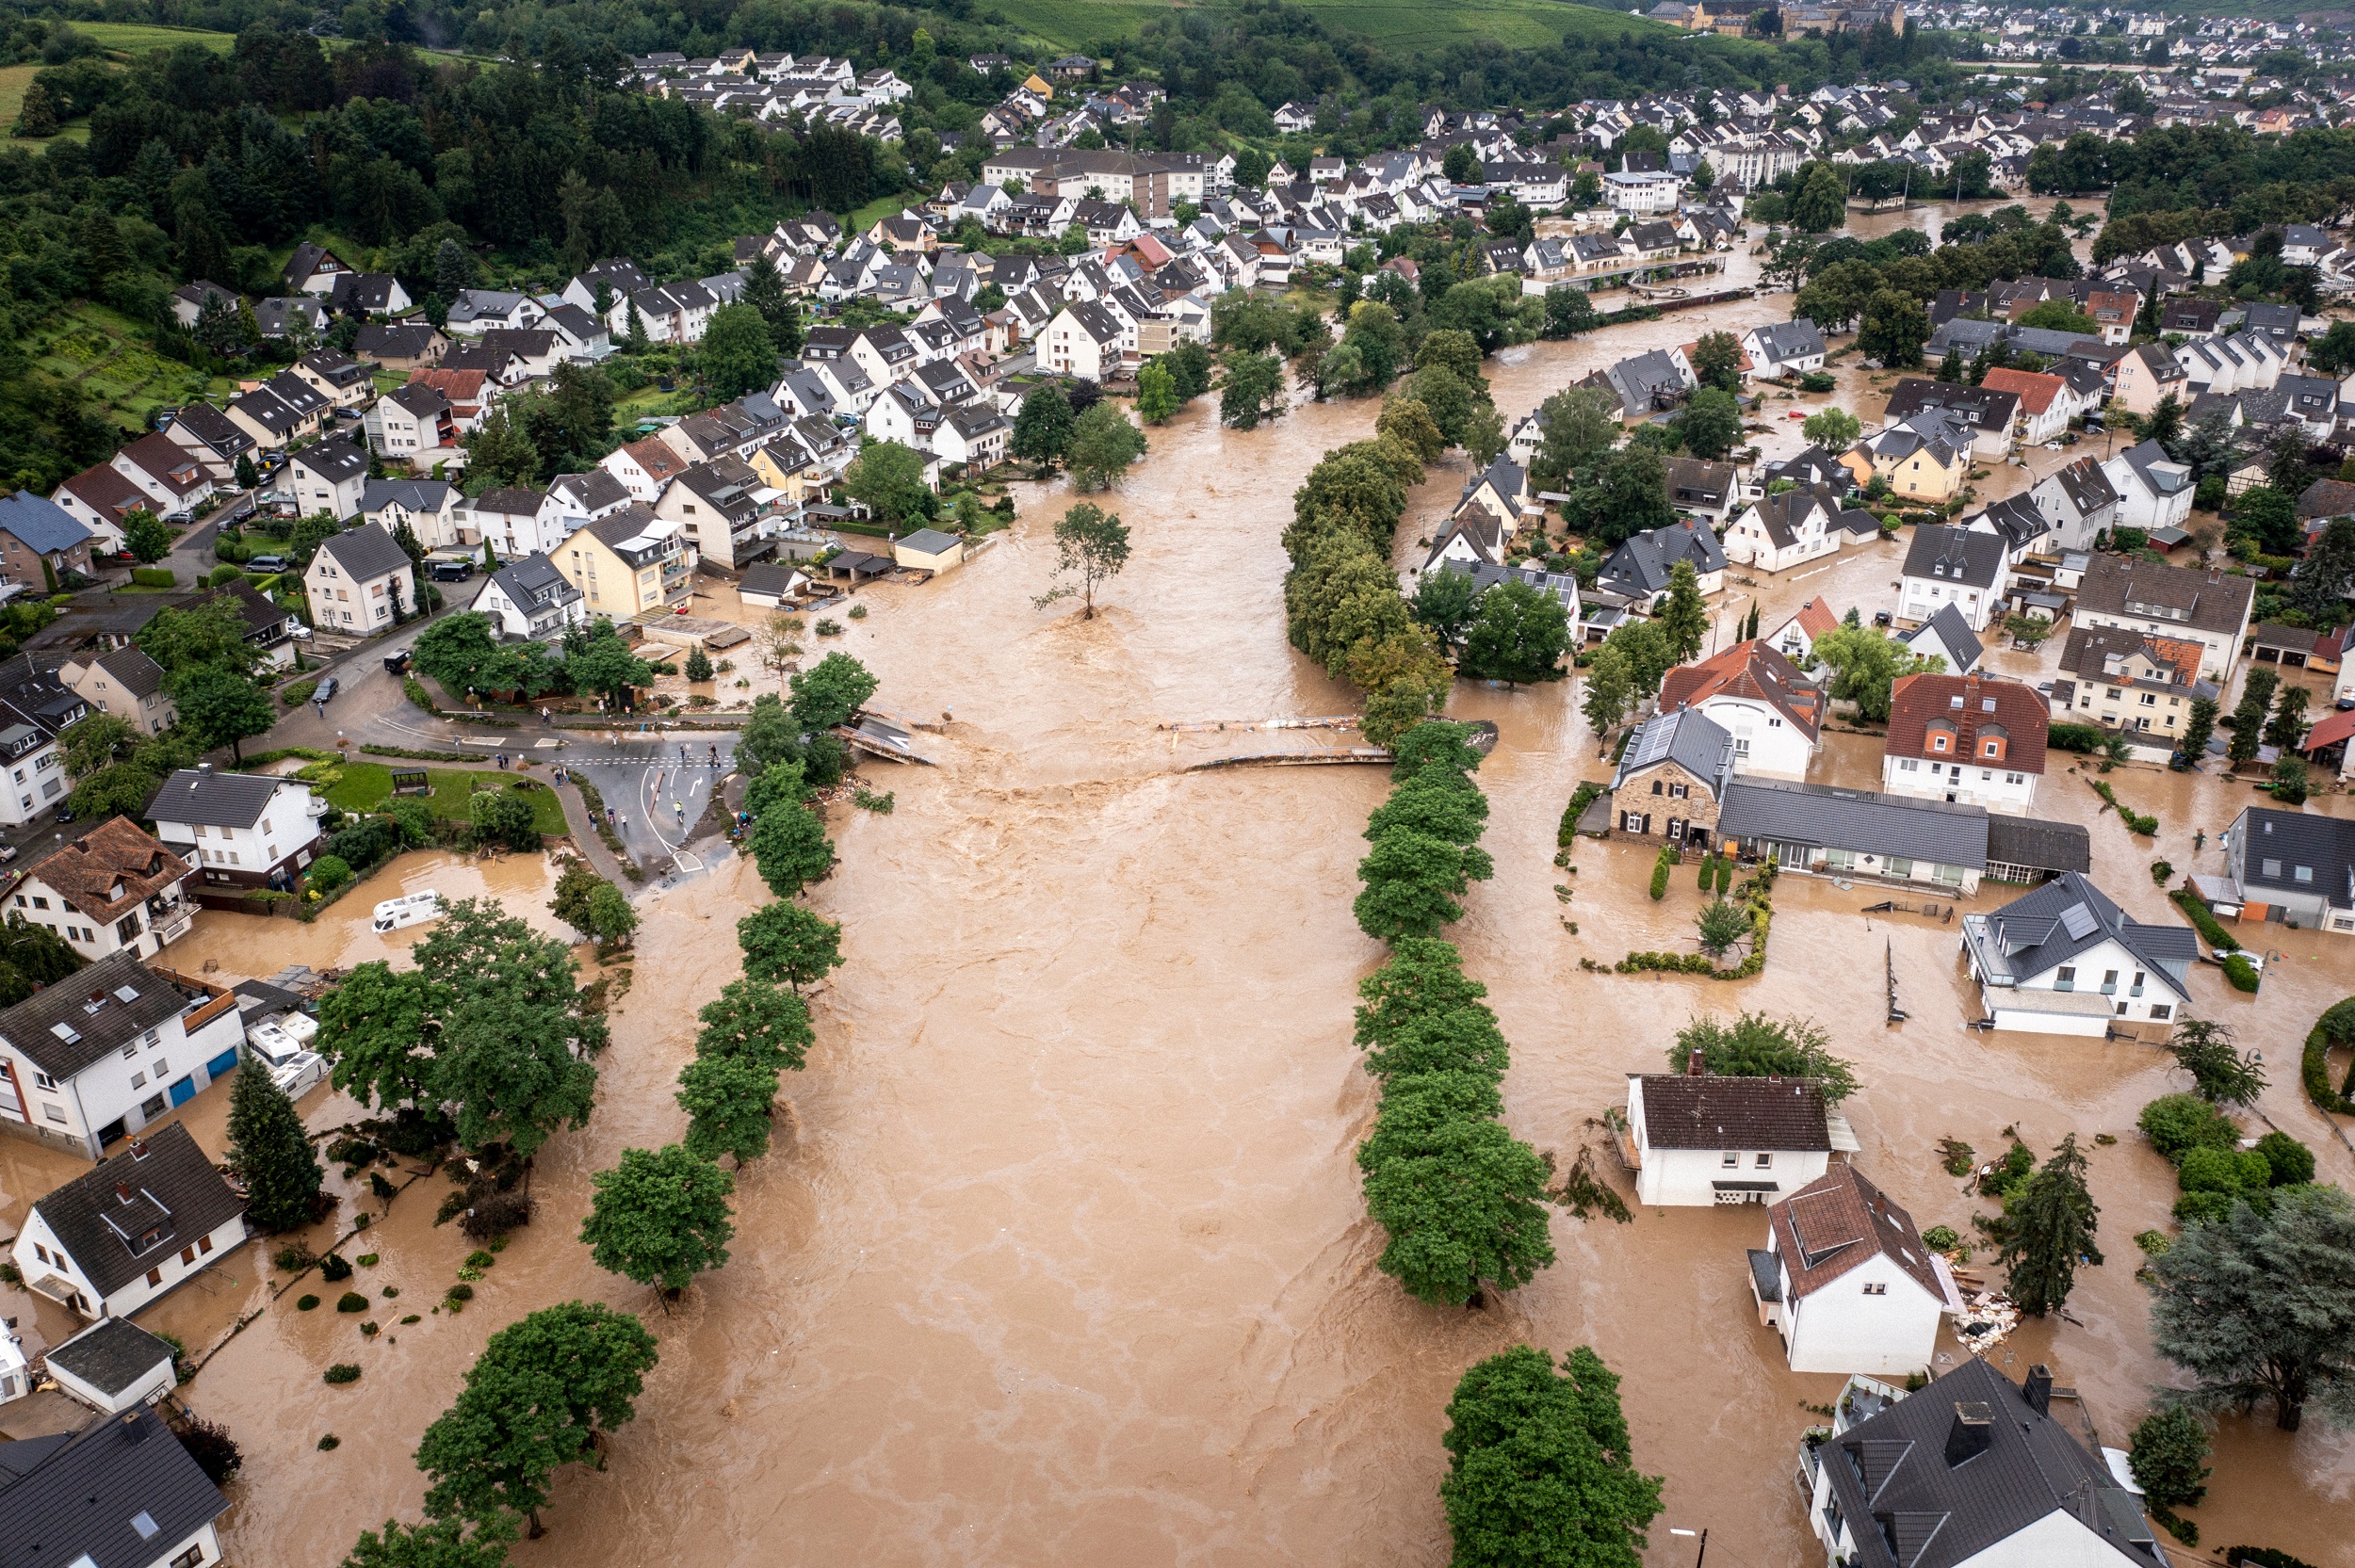 L'Europe bénéficie d'une mortalité moins forte que d'autres continents en cas d'inondations, mais certain pays comme l'Allemagne font office de mauvais élève. © Christian, Adobe Stock